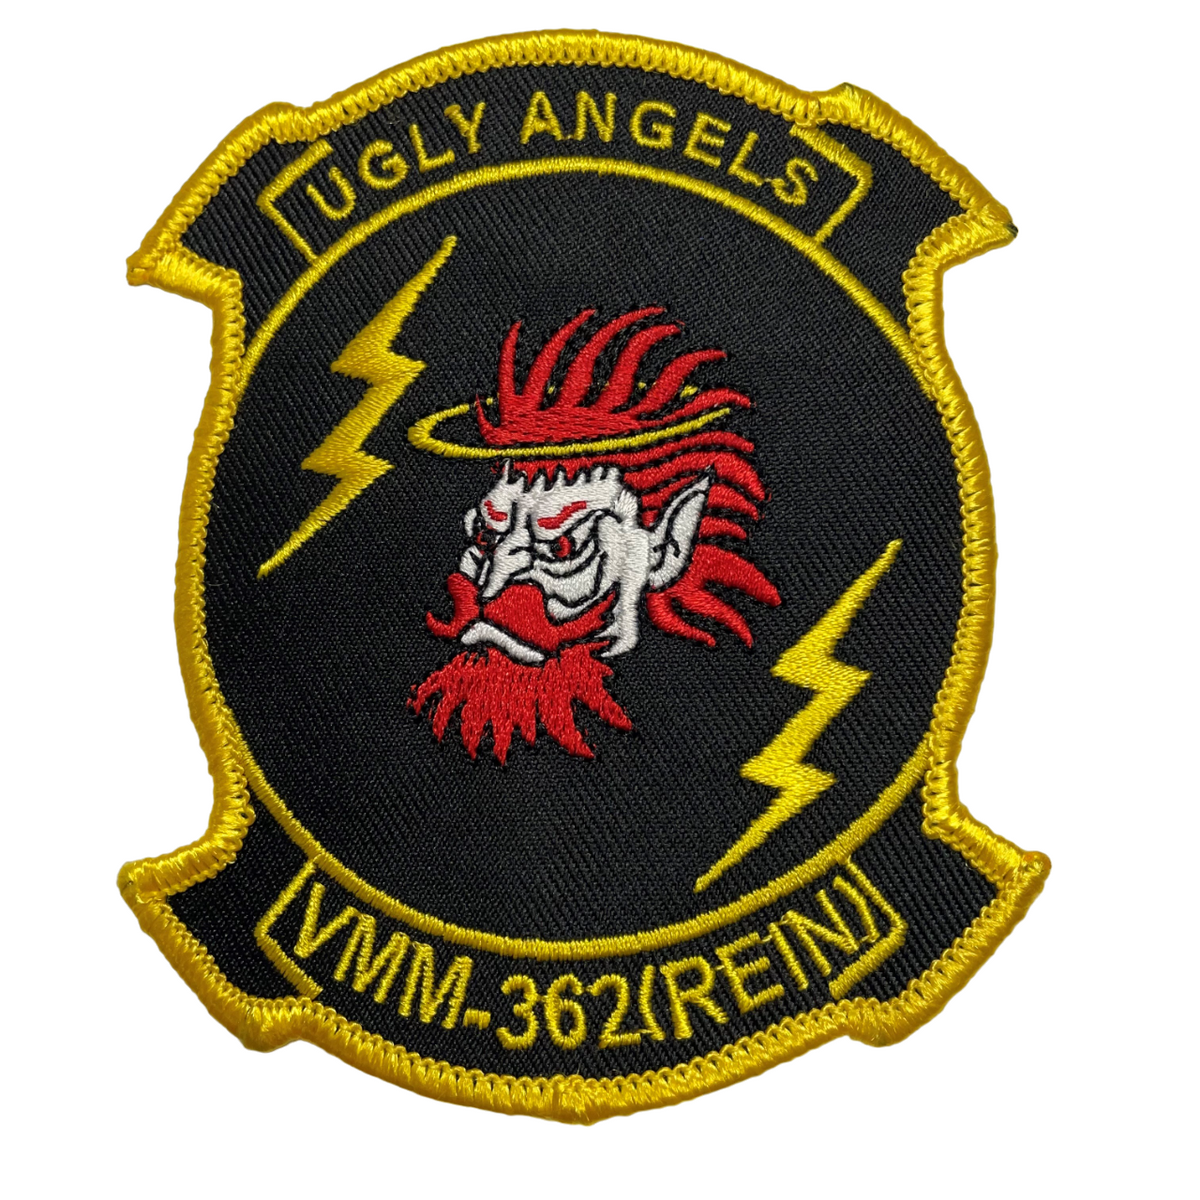 VMM-362 Ugly Angels - Reinforced Version -  Marine Medium Tiltrotor Squadron USMC Patch